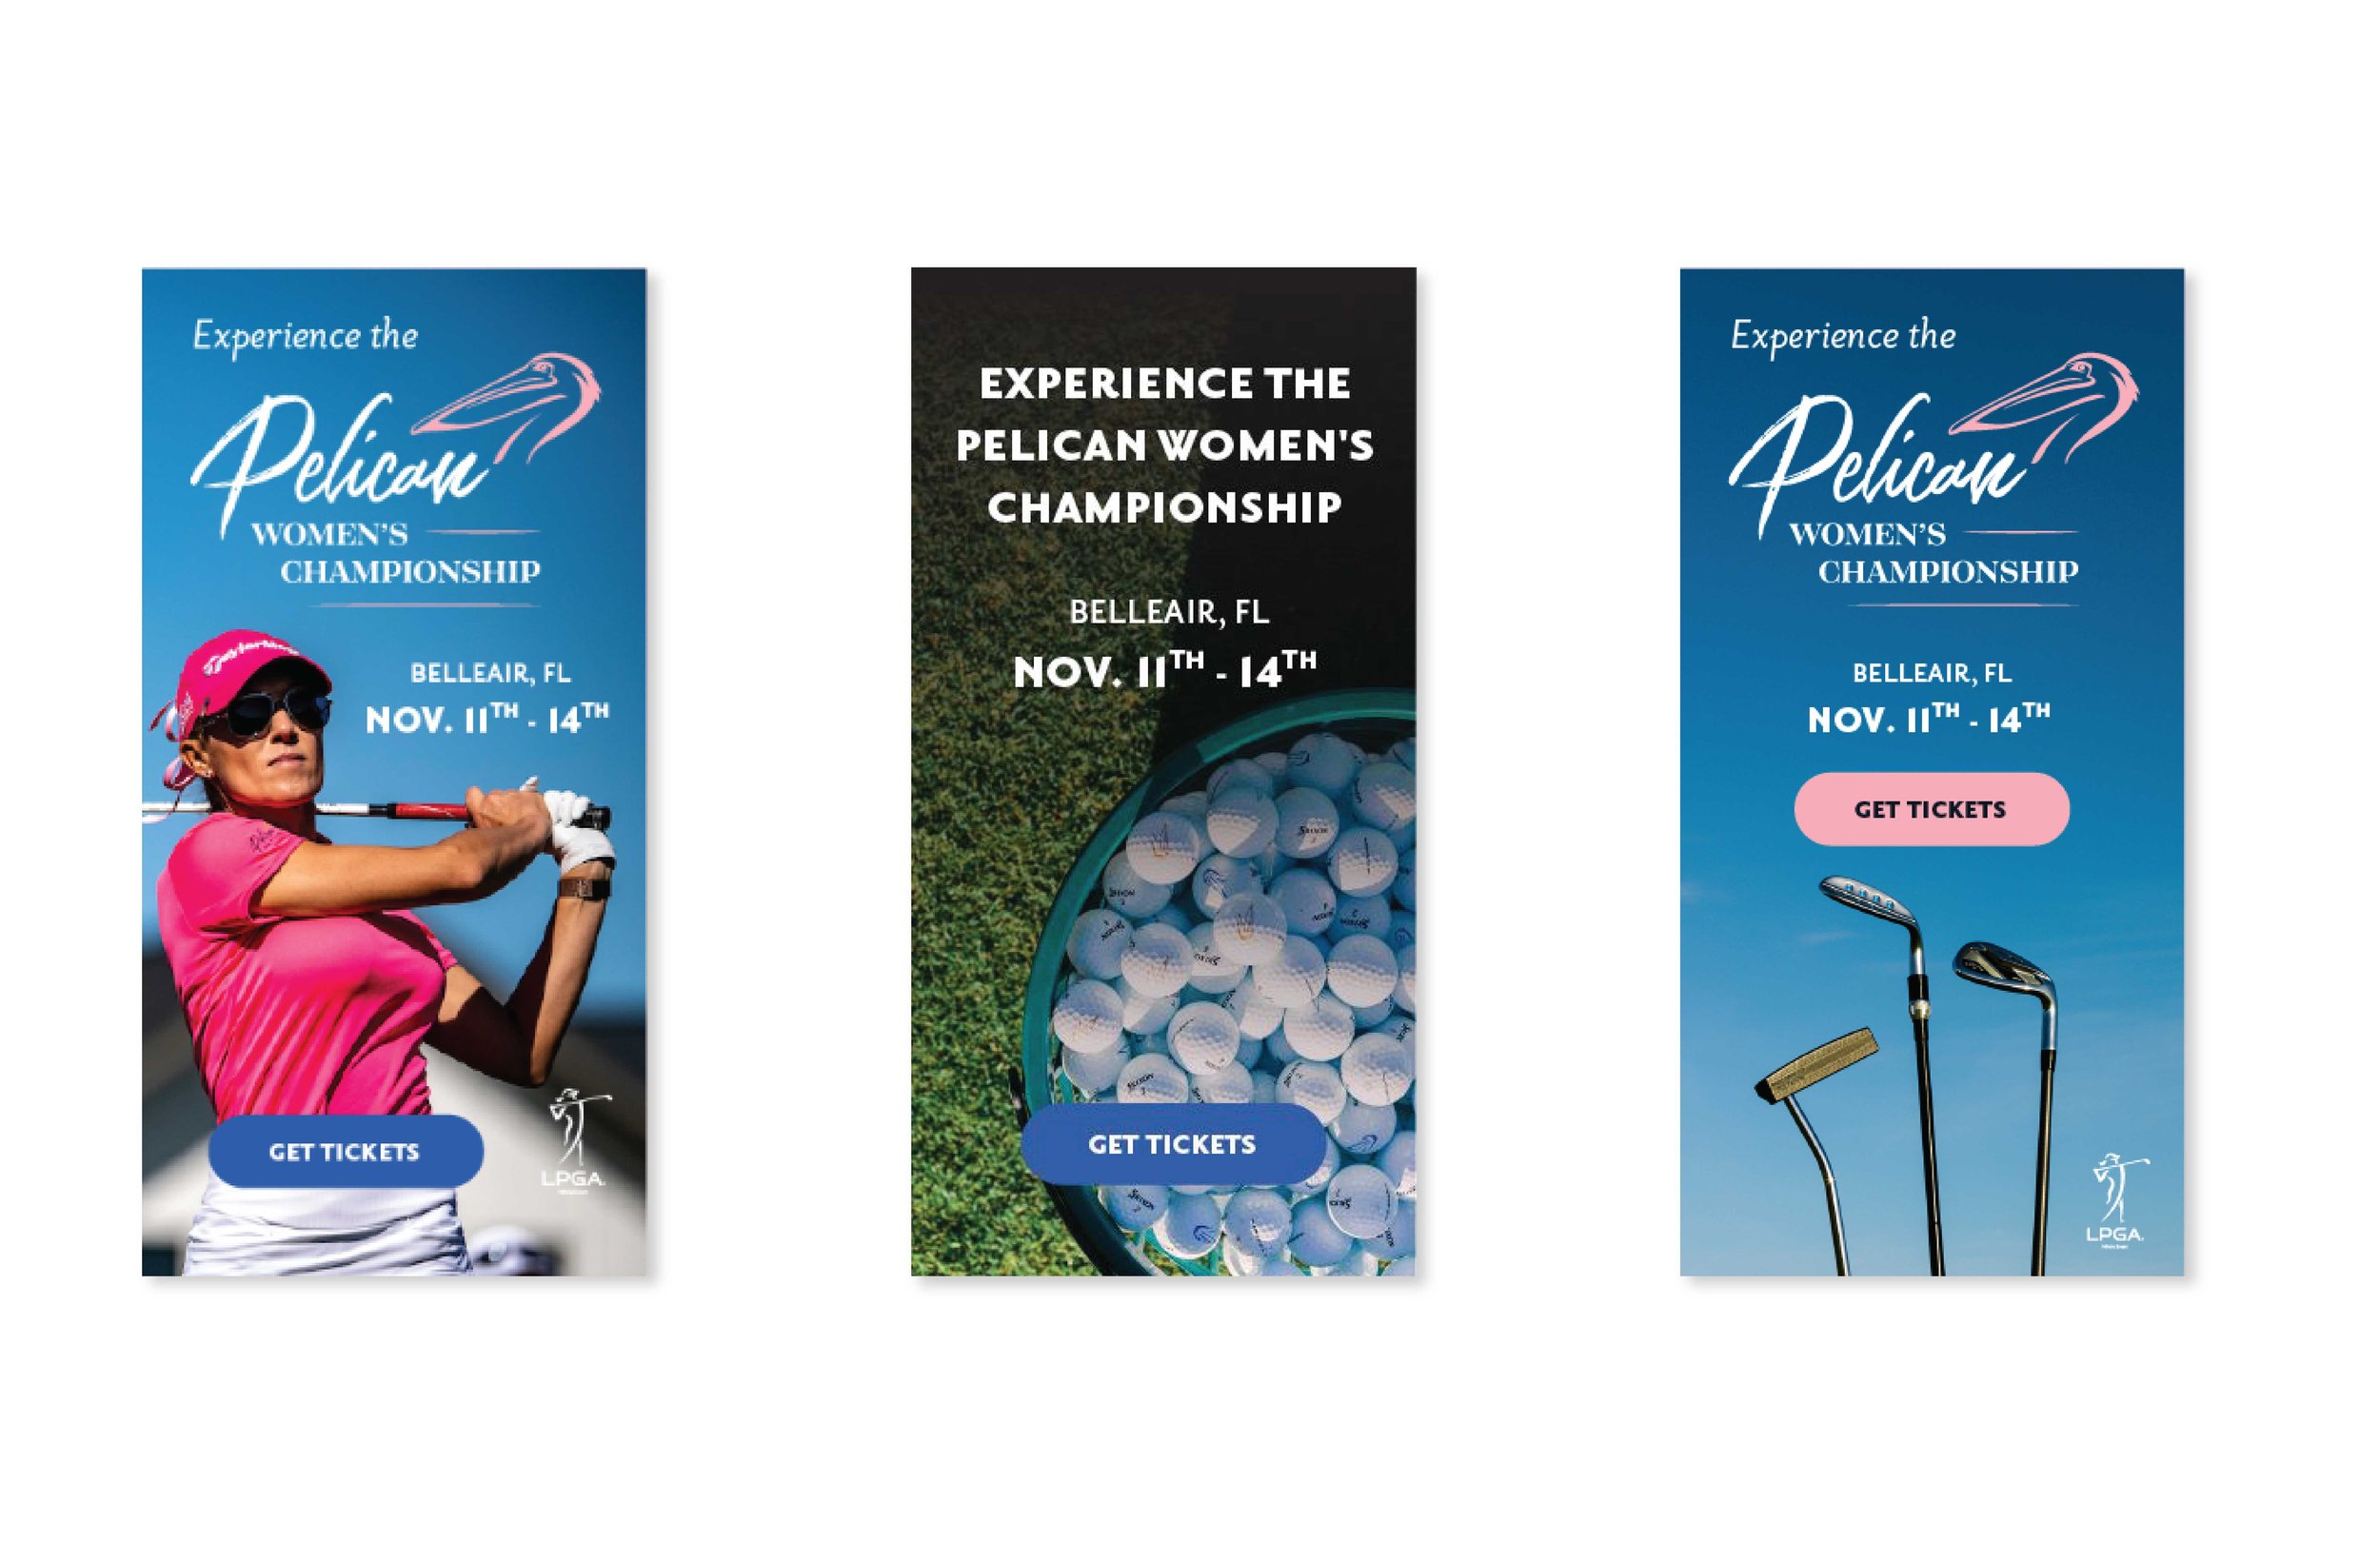  Pelican Women's Championship online banner event advertisements. 